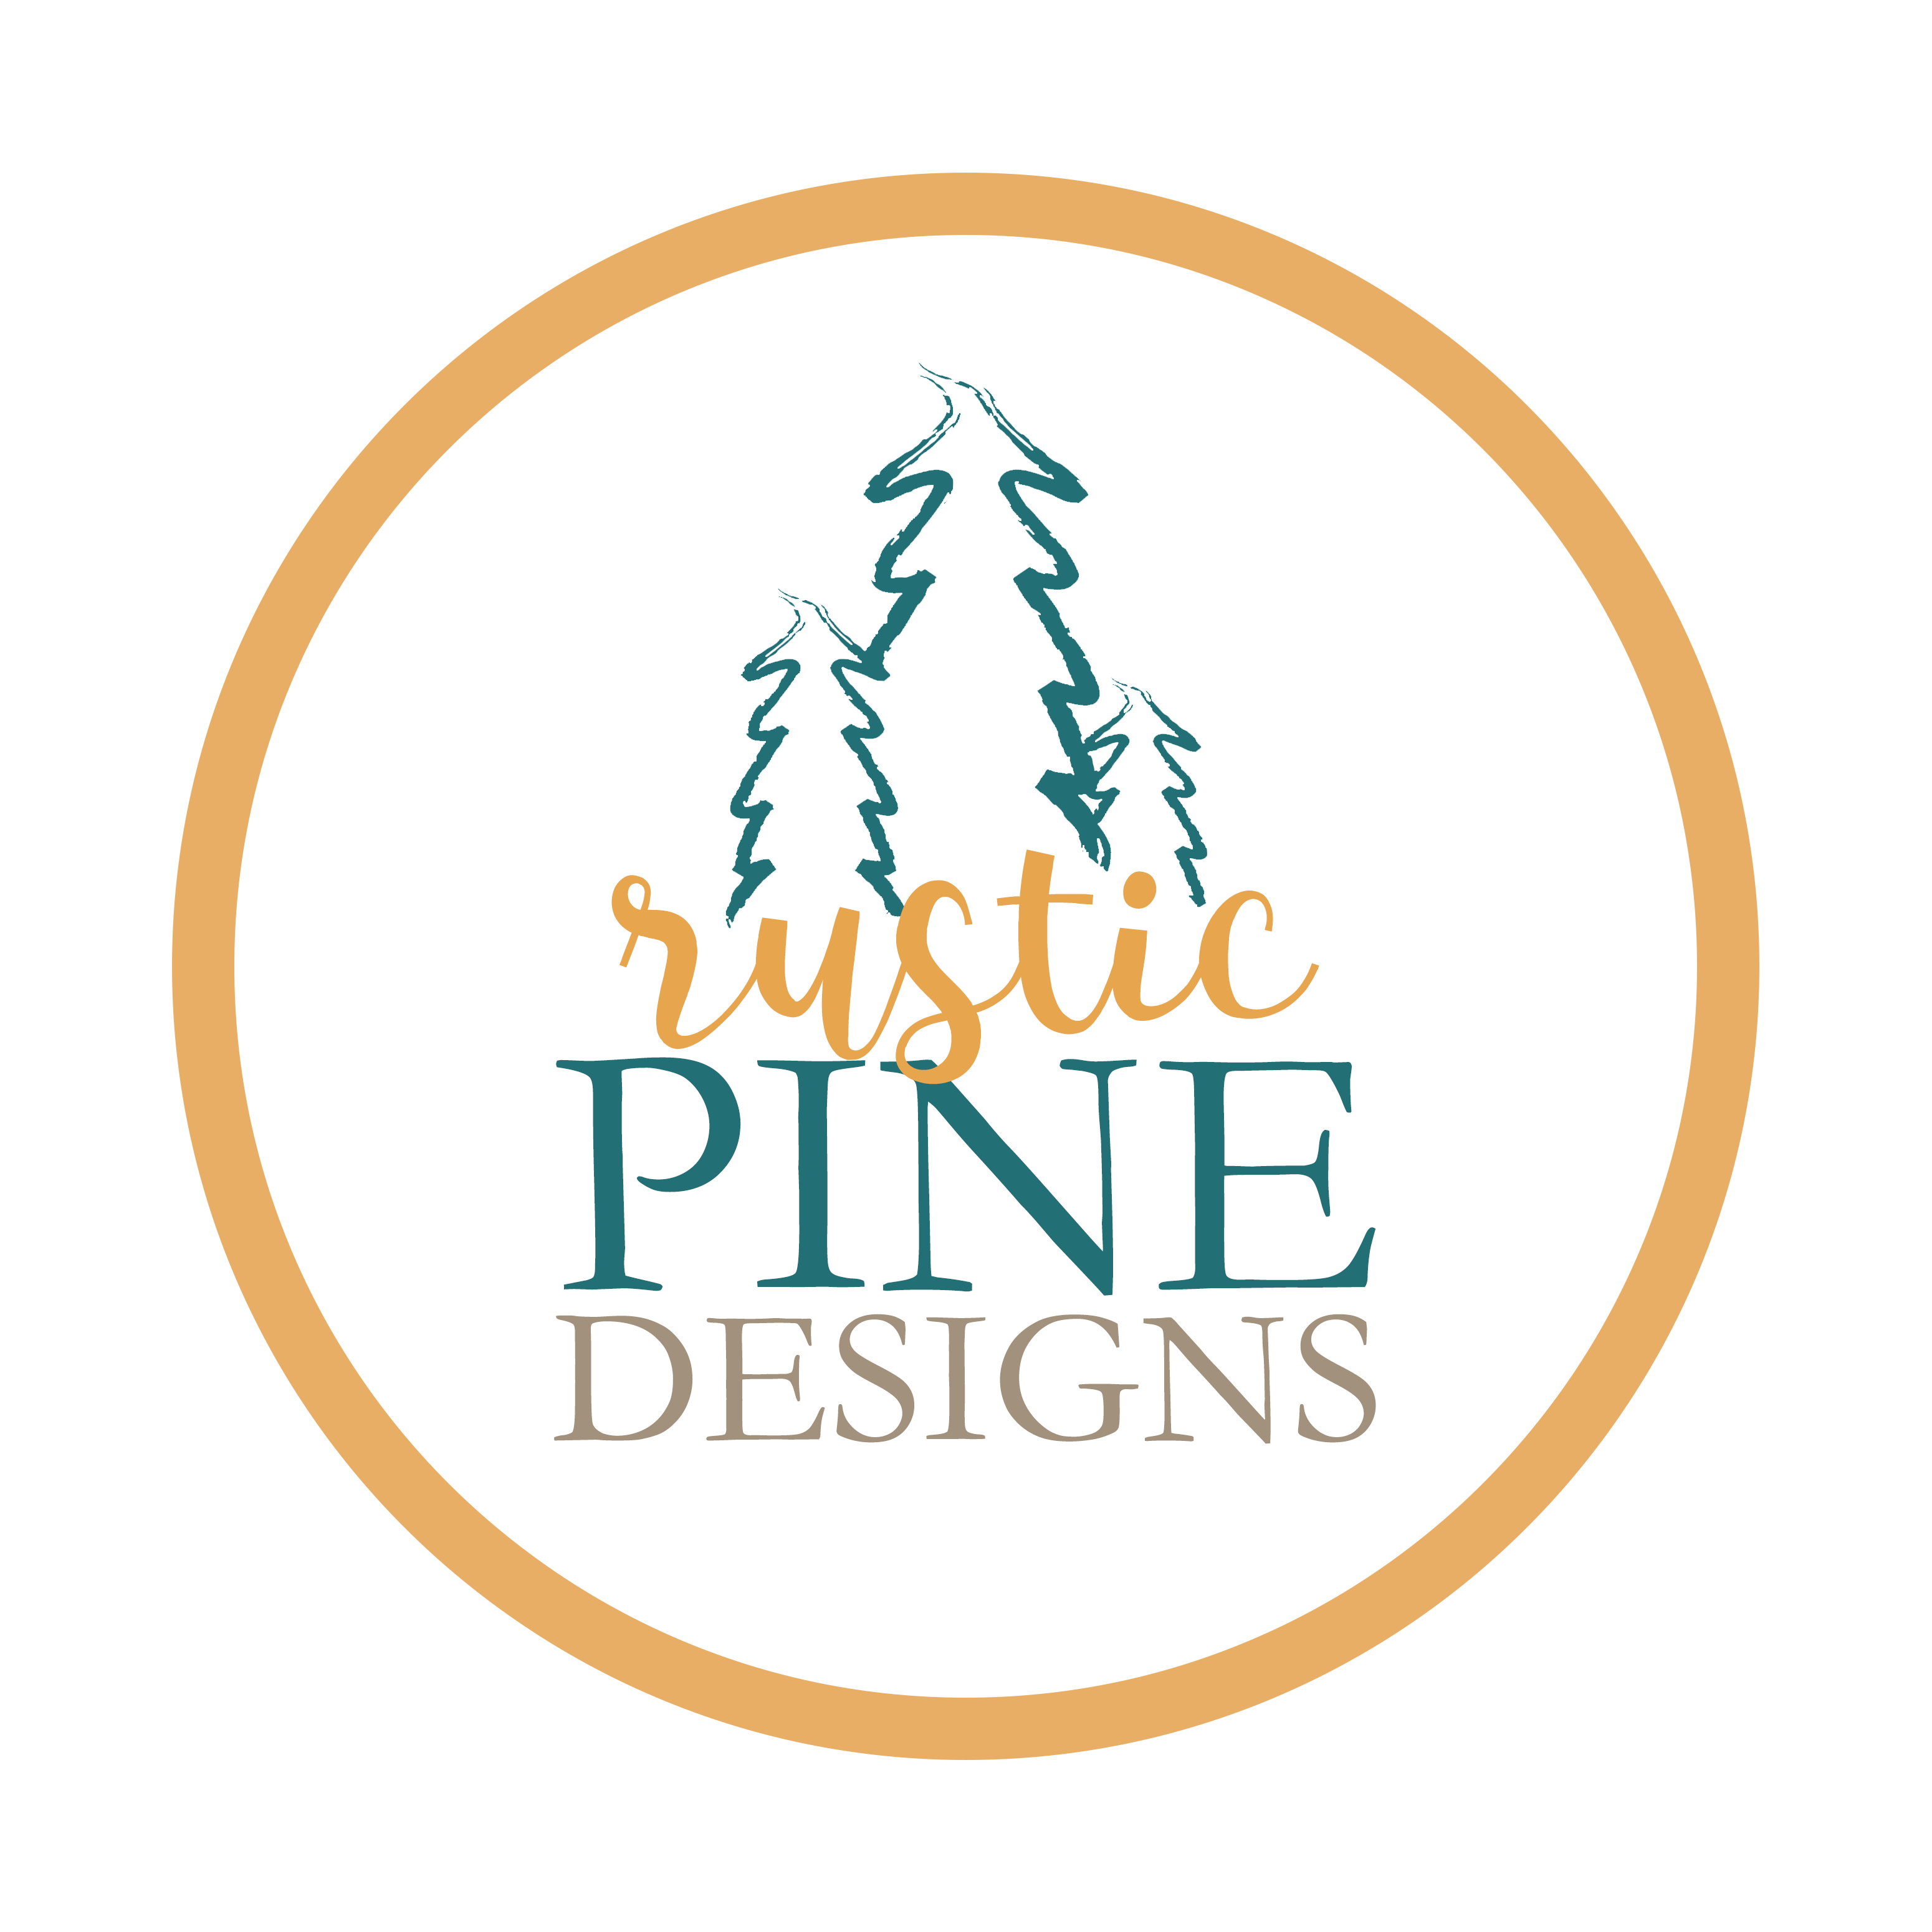 Rustic Pine Designs